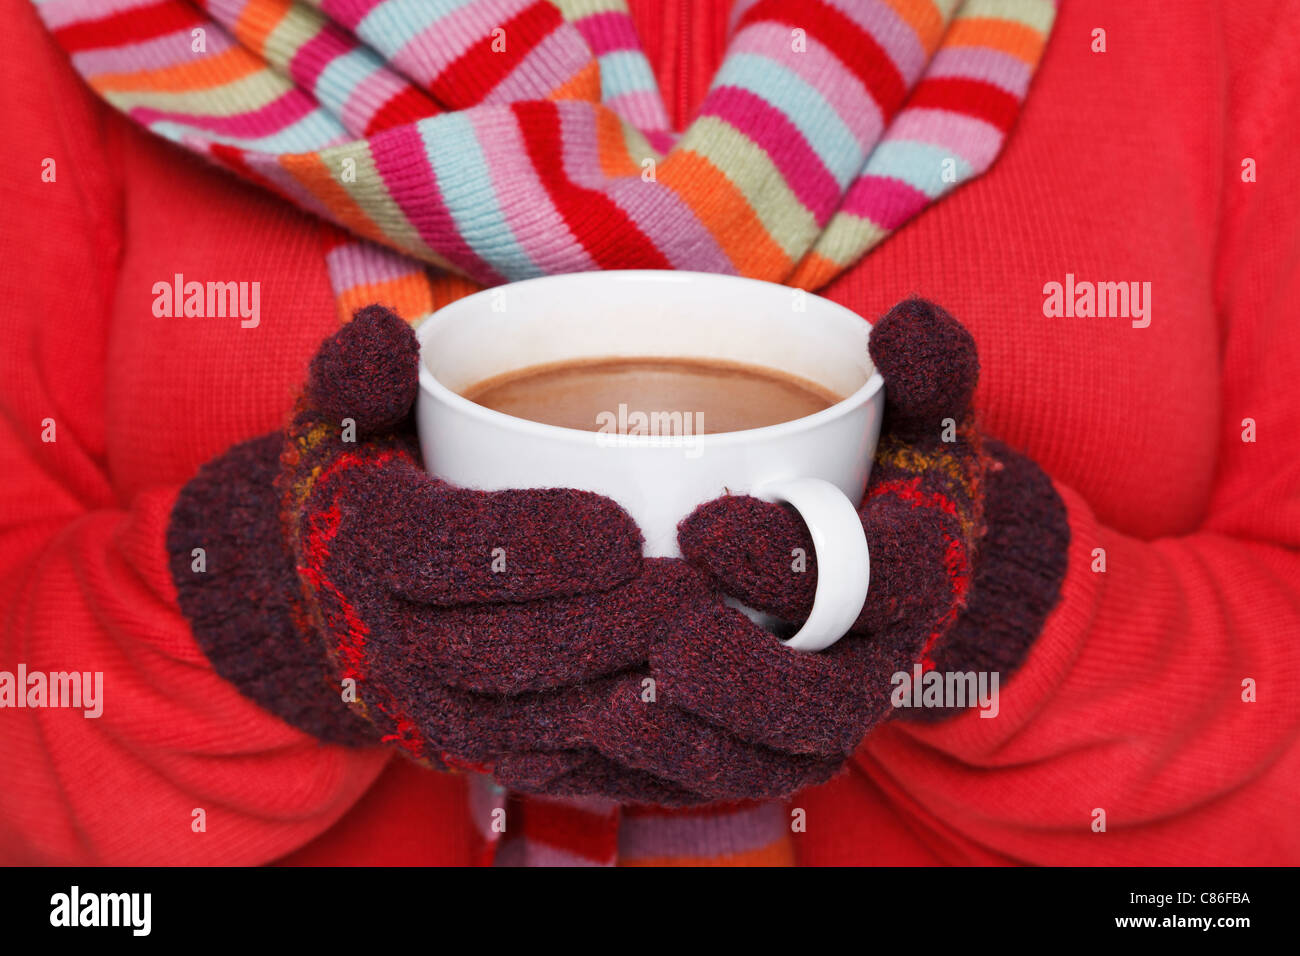 TRIKOTSHIRT Foto einer Frau trägt einen roten Pullover, wollene Handschuhe und Schal hält eine Tasse heiße Schokolade voller Nahaufnahme Stockfoto